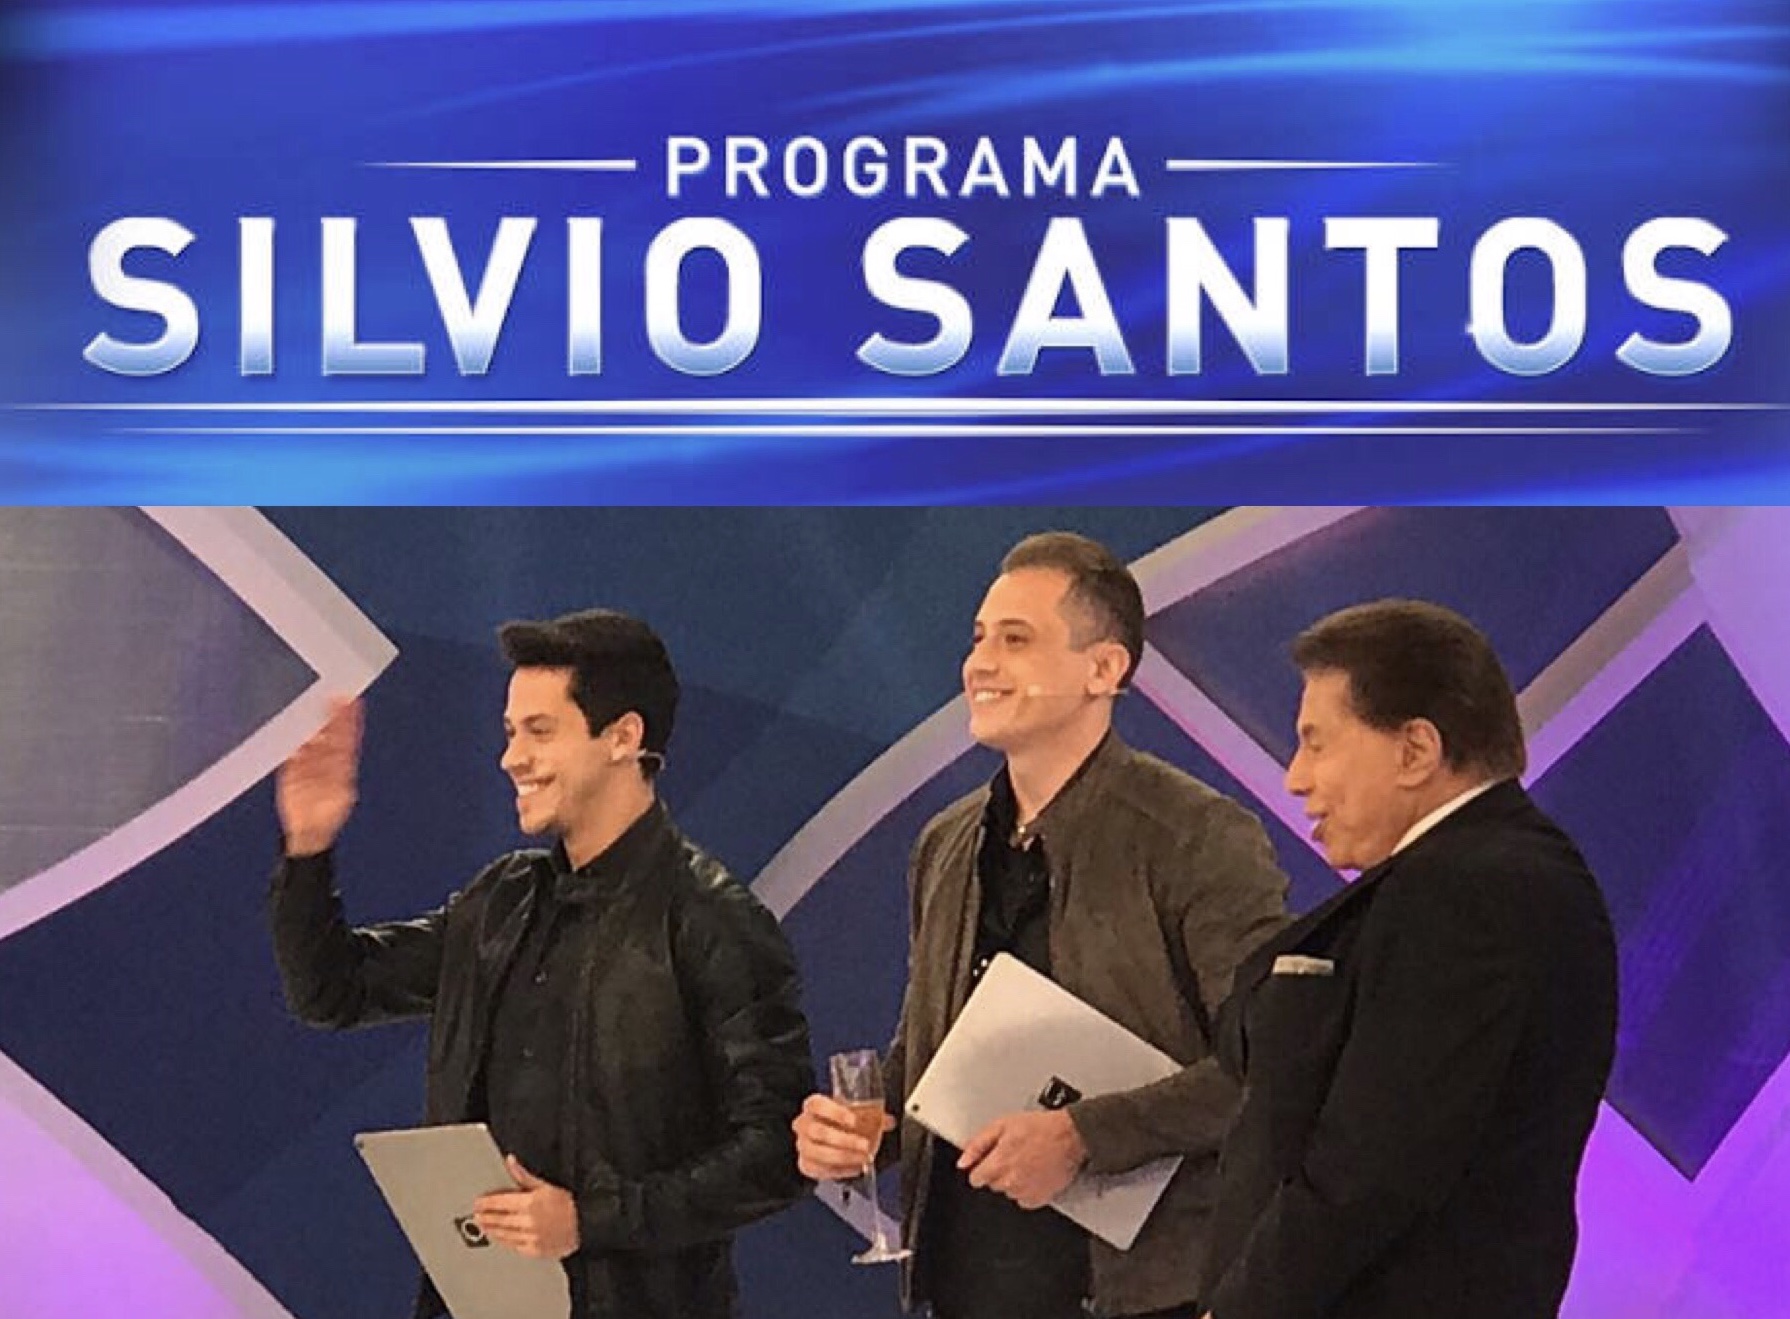 noticia Henry e Klauss, famosos Mágicos Ilusionistas, estarão no Programa Silvio Santos neste domingo